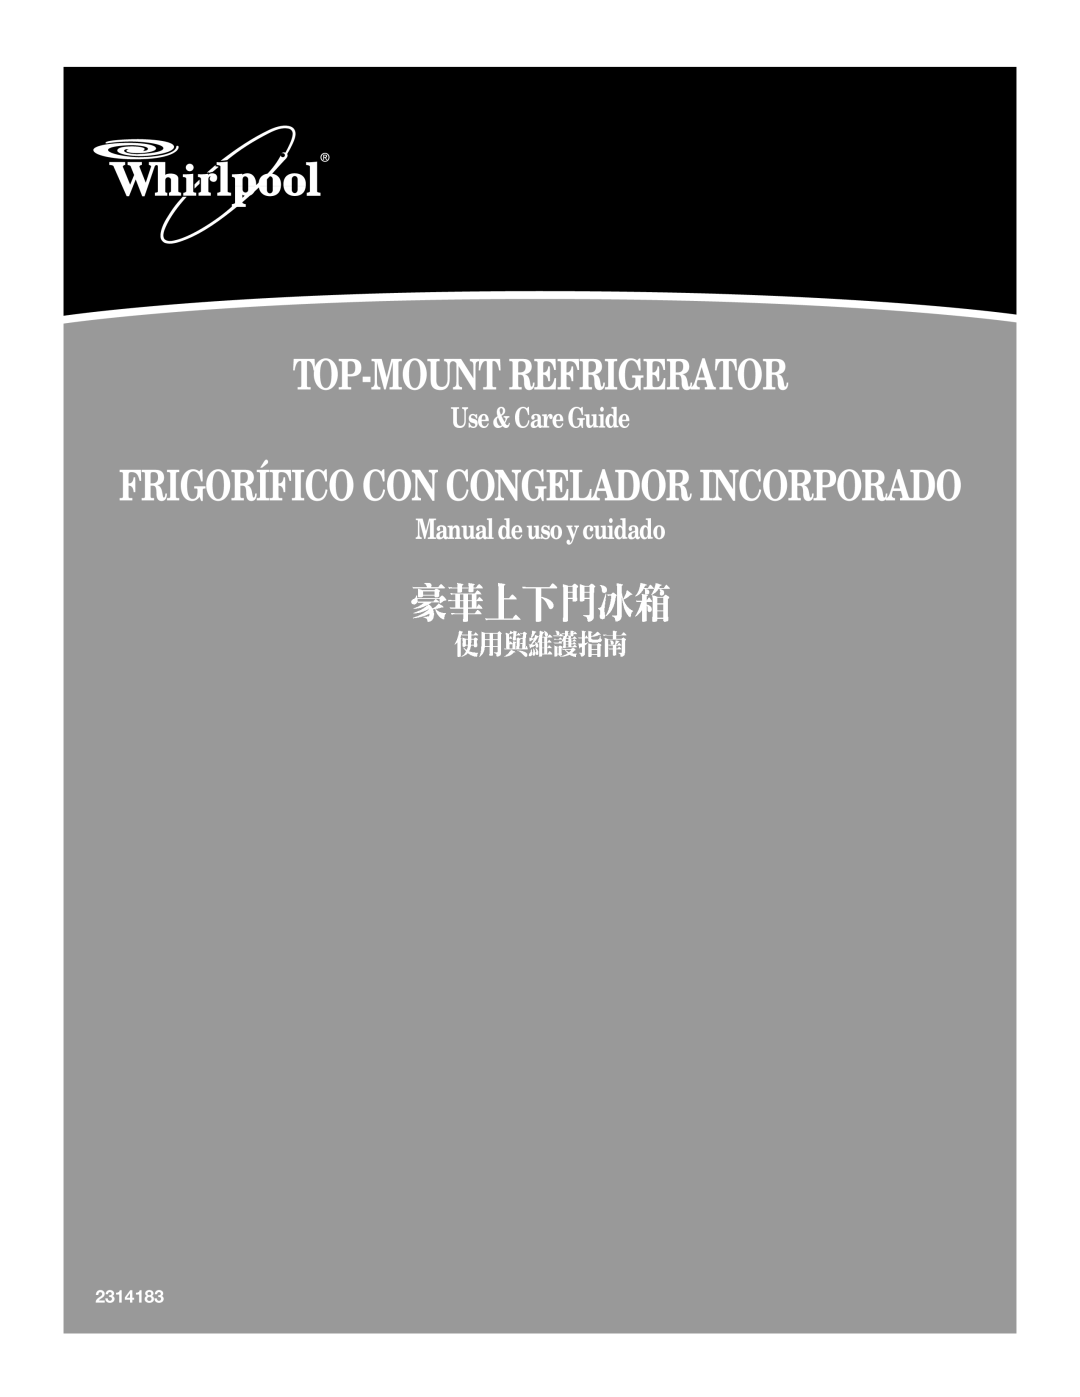 Whirlpool 338 manual Top-Mountrefrigerator, Frigorífico Con Congelador Incorporado, Use&CareGuide, Manualdeusoycuidado 